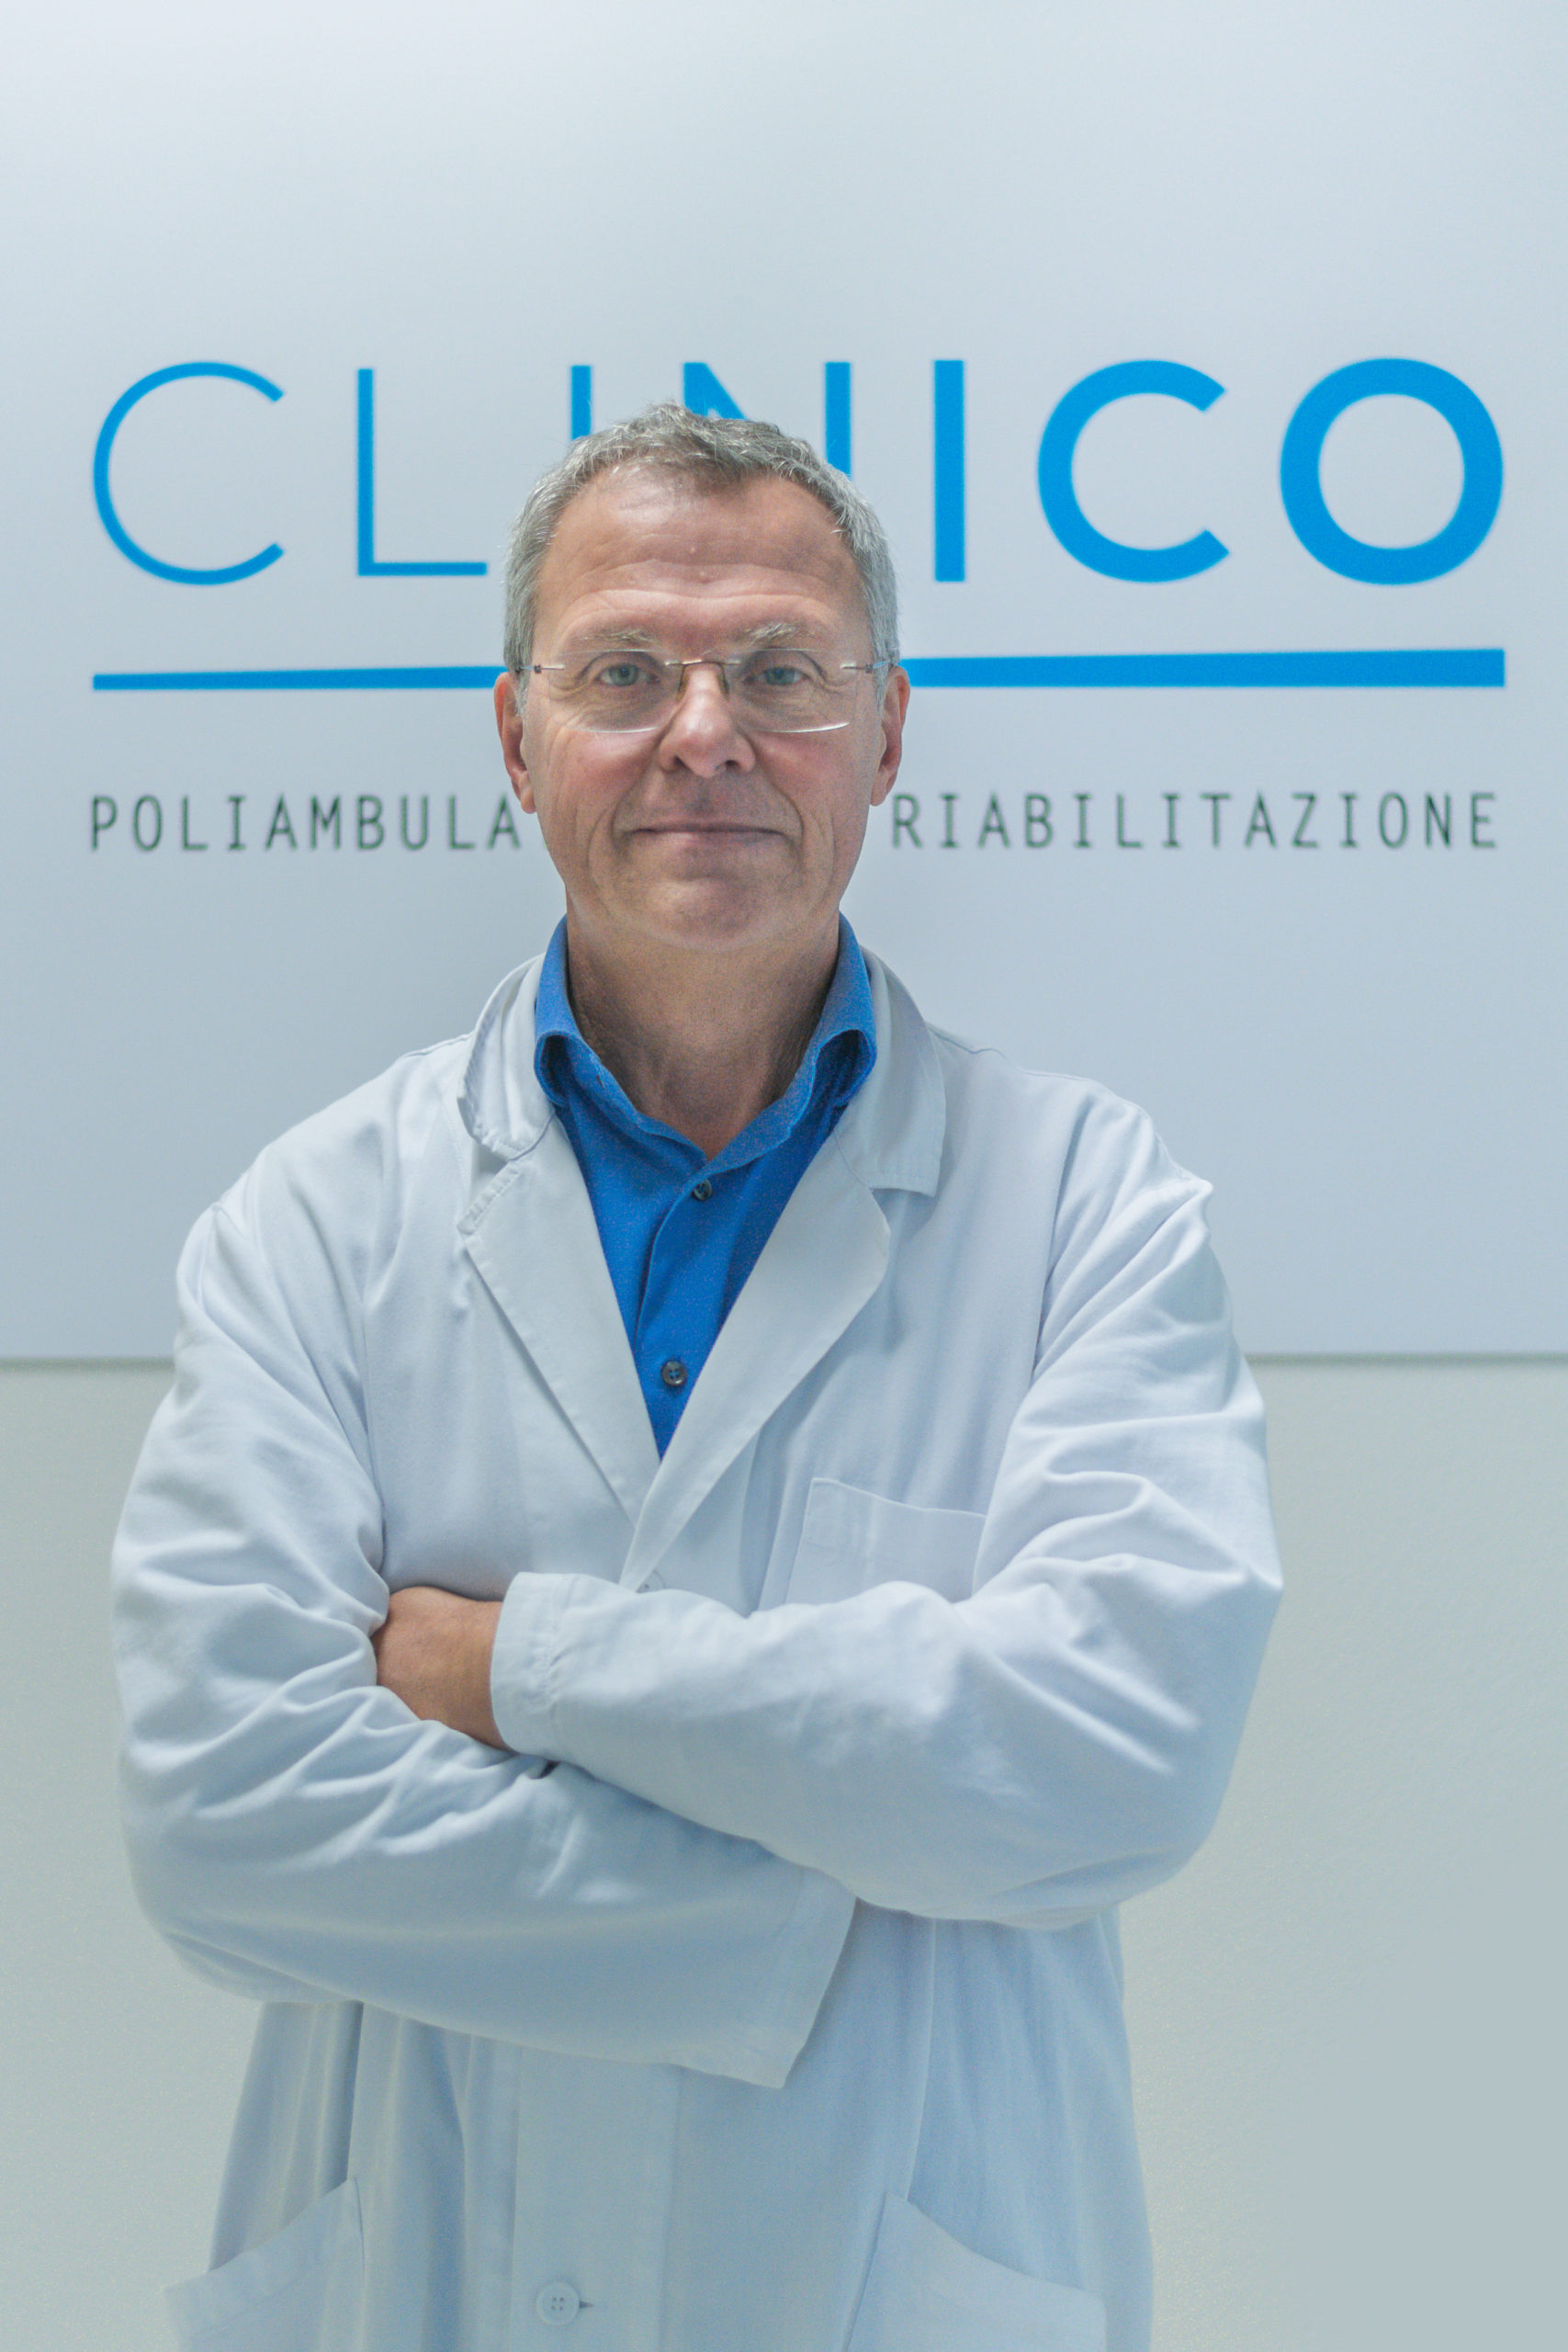 Dr. Setti Pietro